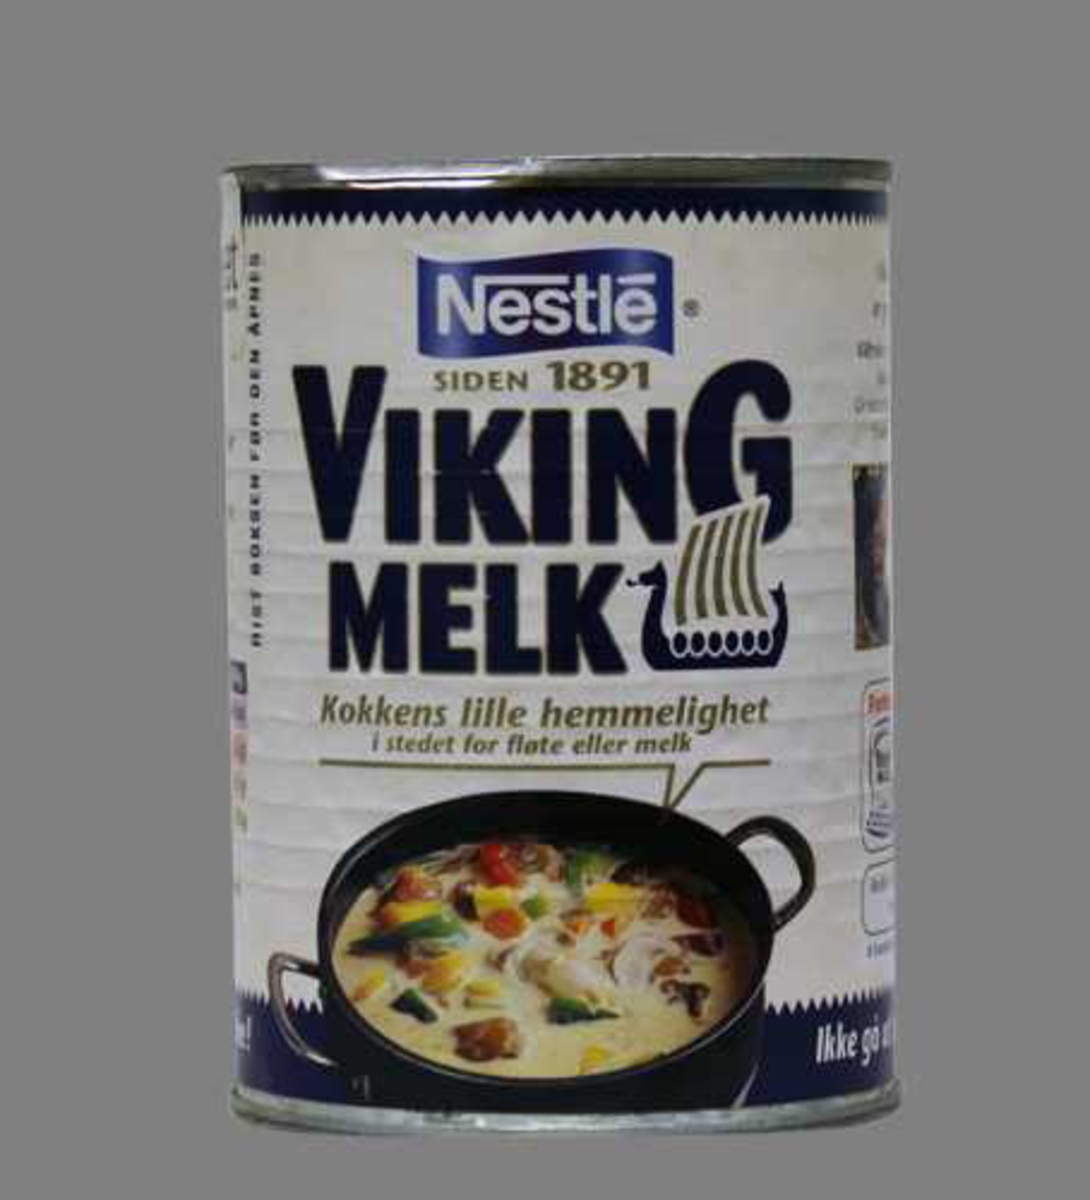 Uåpnet blikkboks som inneholder Viking melk. 